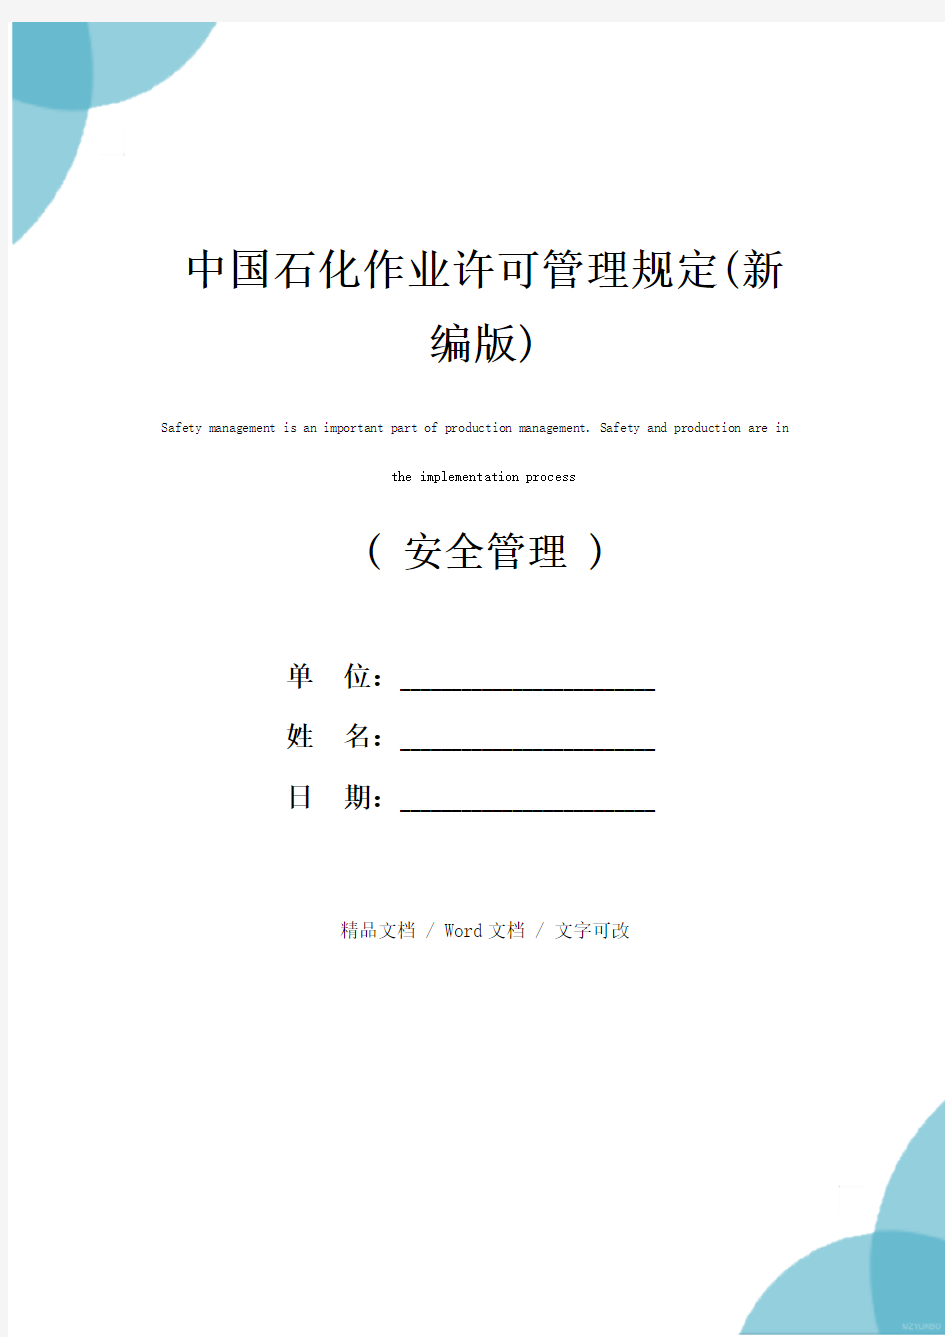 中国石化作业许可管理规定(新编版)